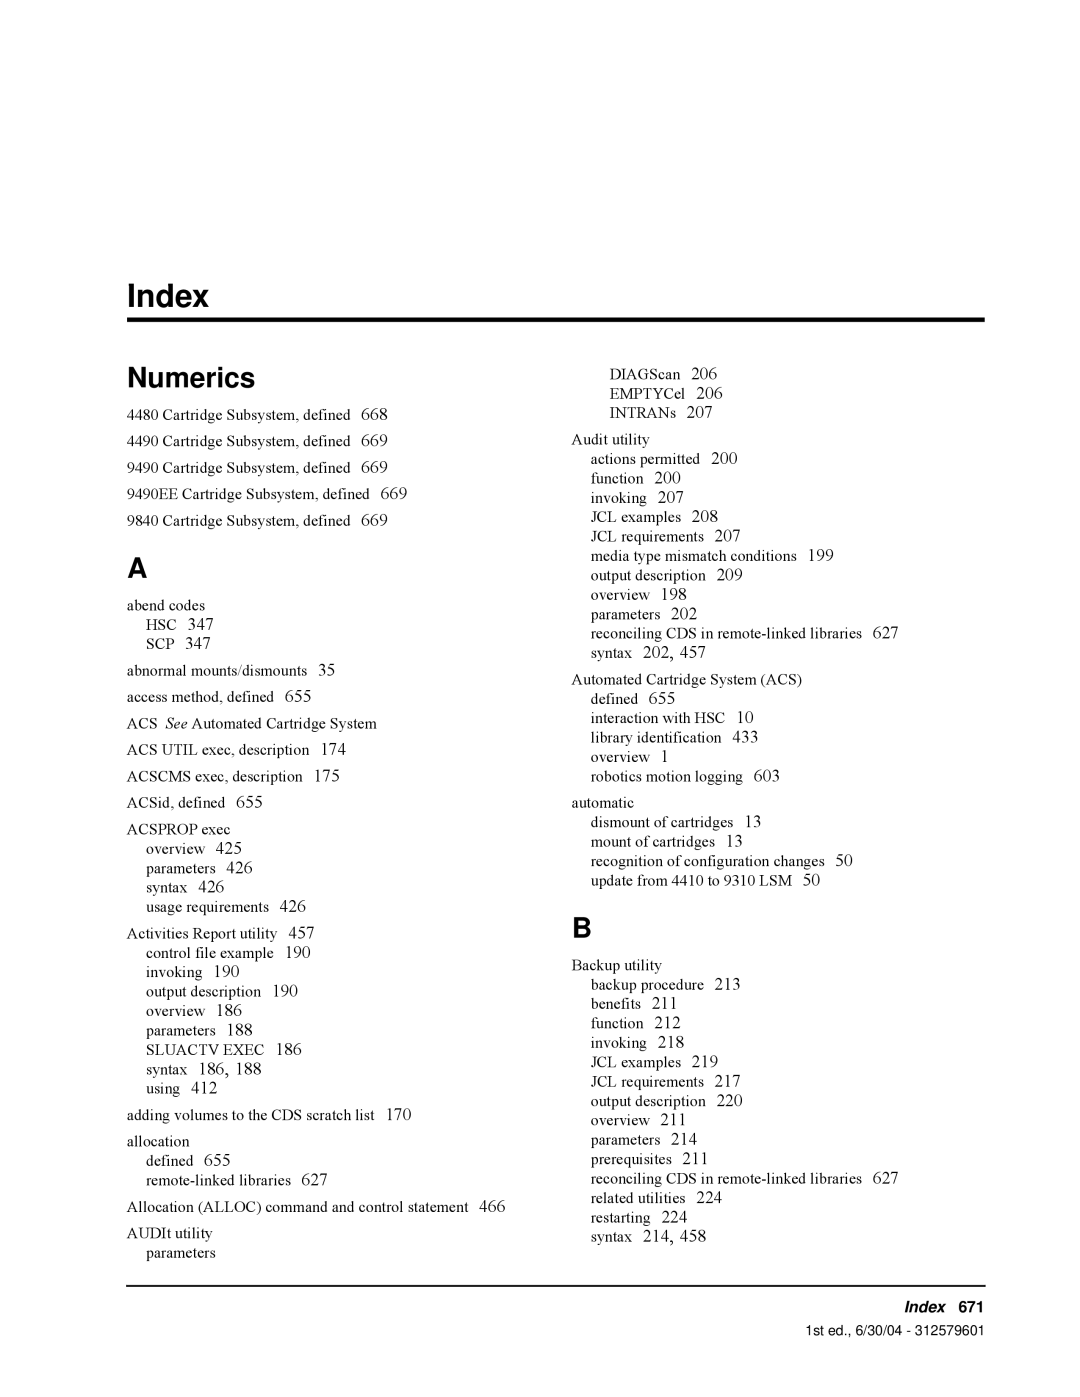 StorageTek 6 manual Index, Numerics 